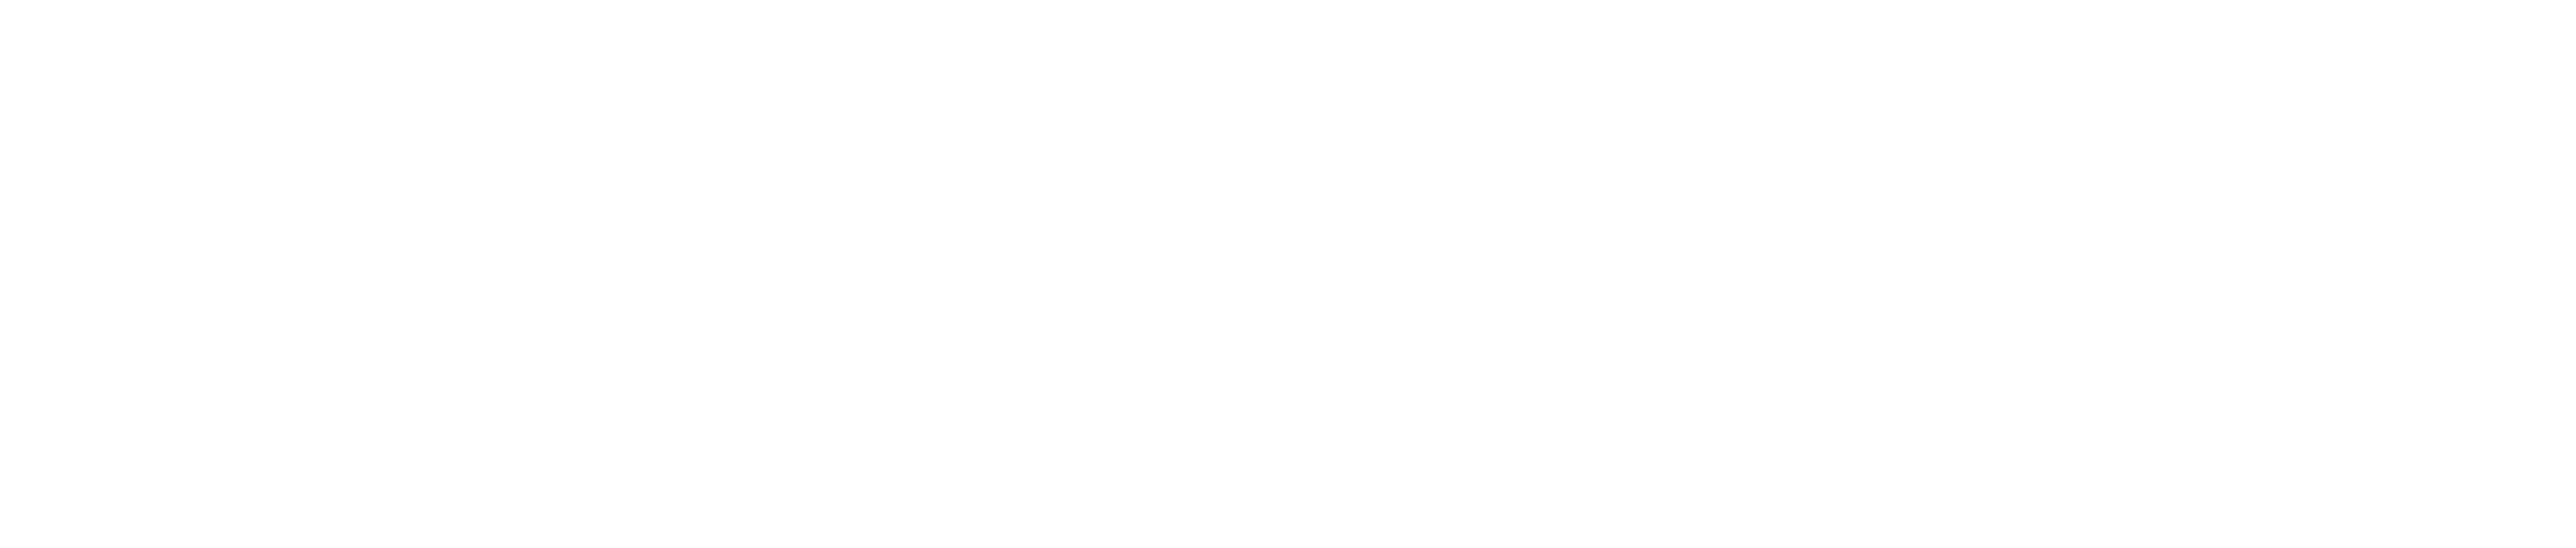 Mayans M.C. logo